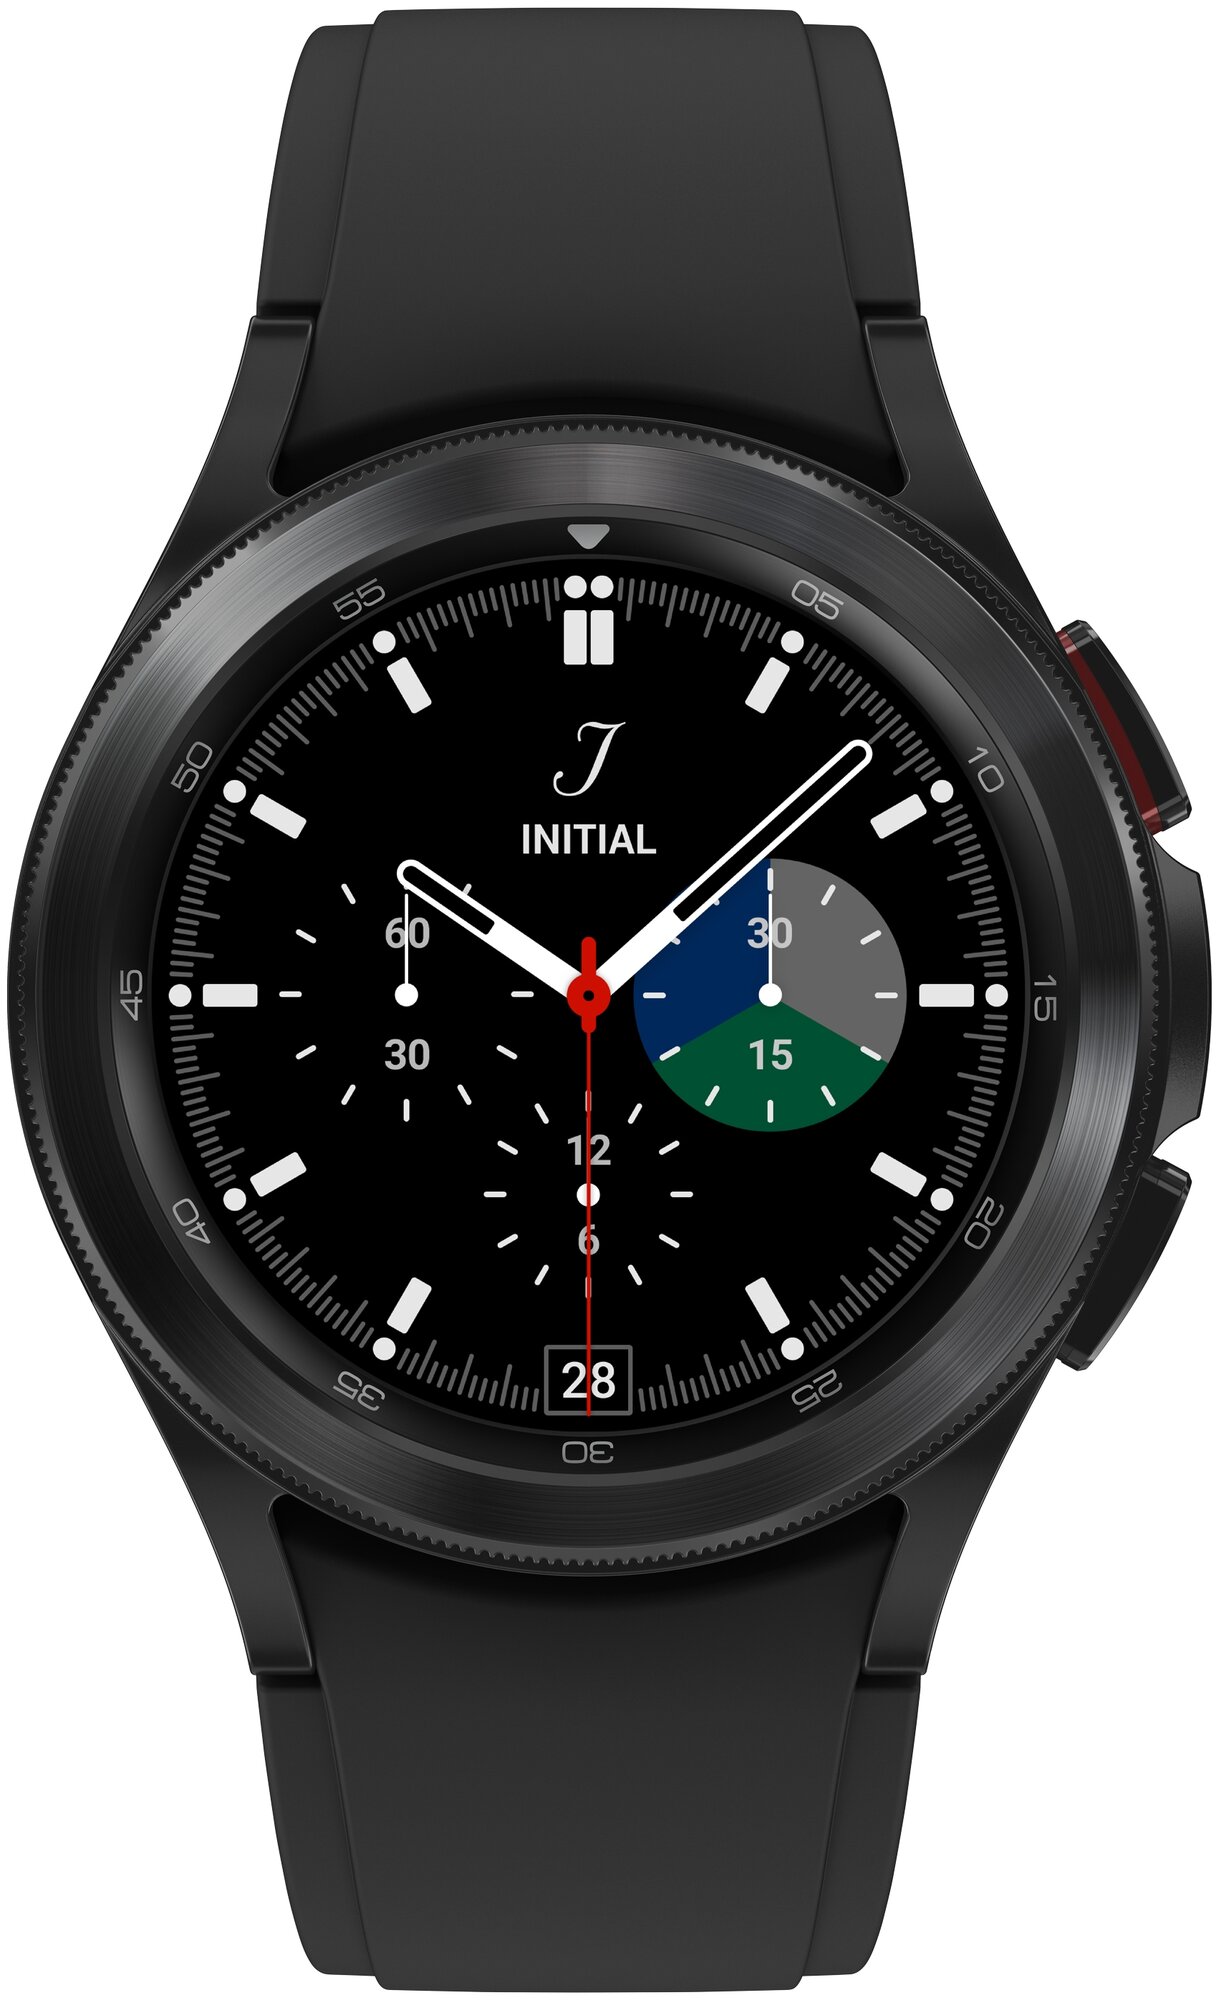 Умные часы Samsung Galaxy Watch4 Classic 42 мм Wi-Fi NFC RU, черный